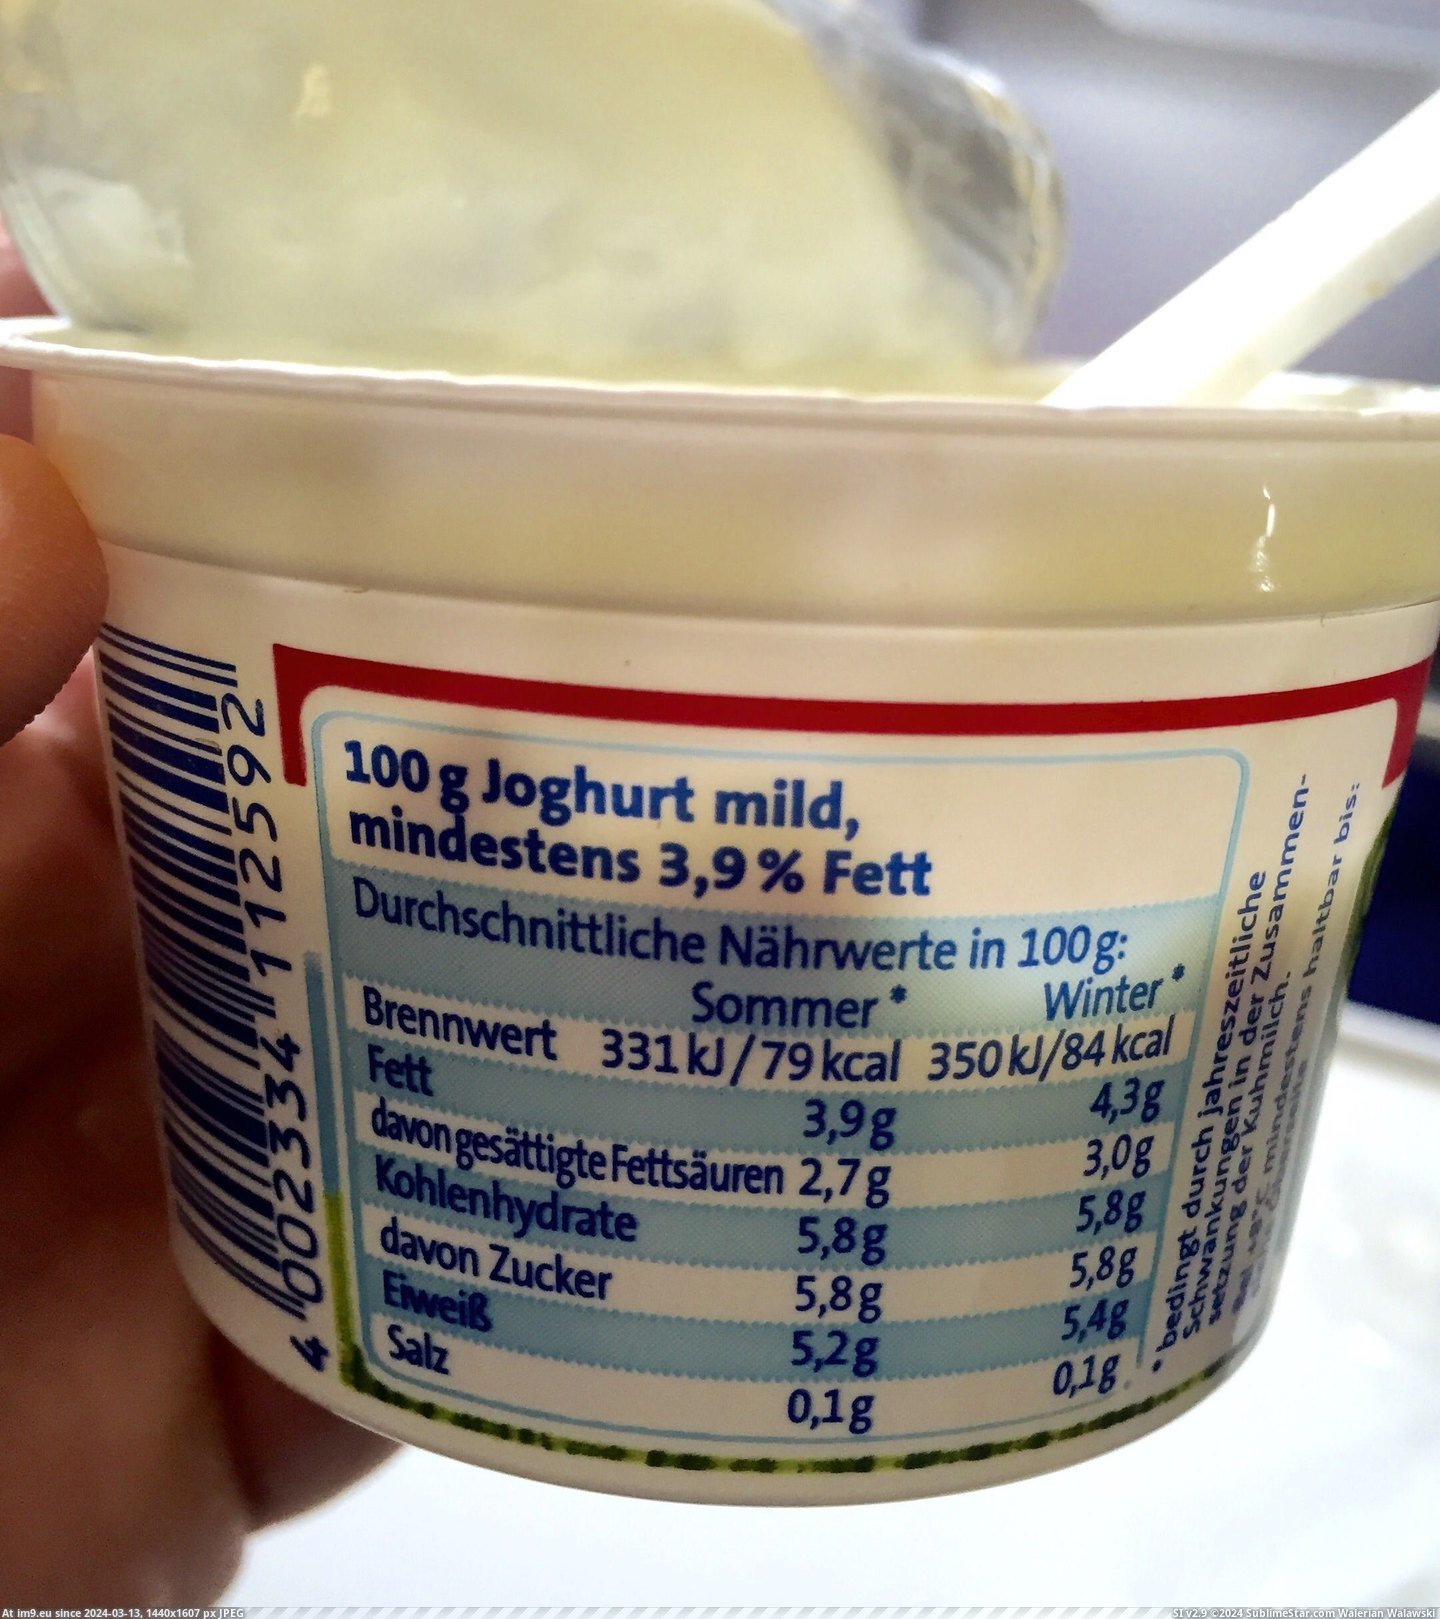 [Mildlyinteresting] This yogurt has more calories in the winter (in My r/MILDLYINTERESTING favs)